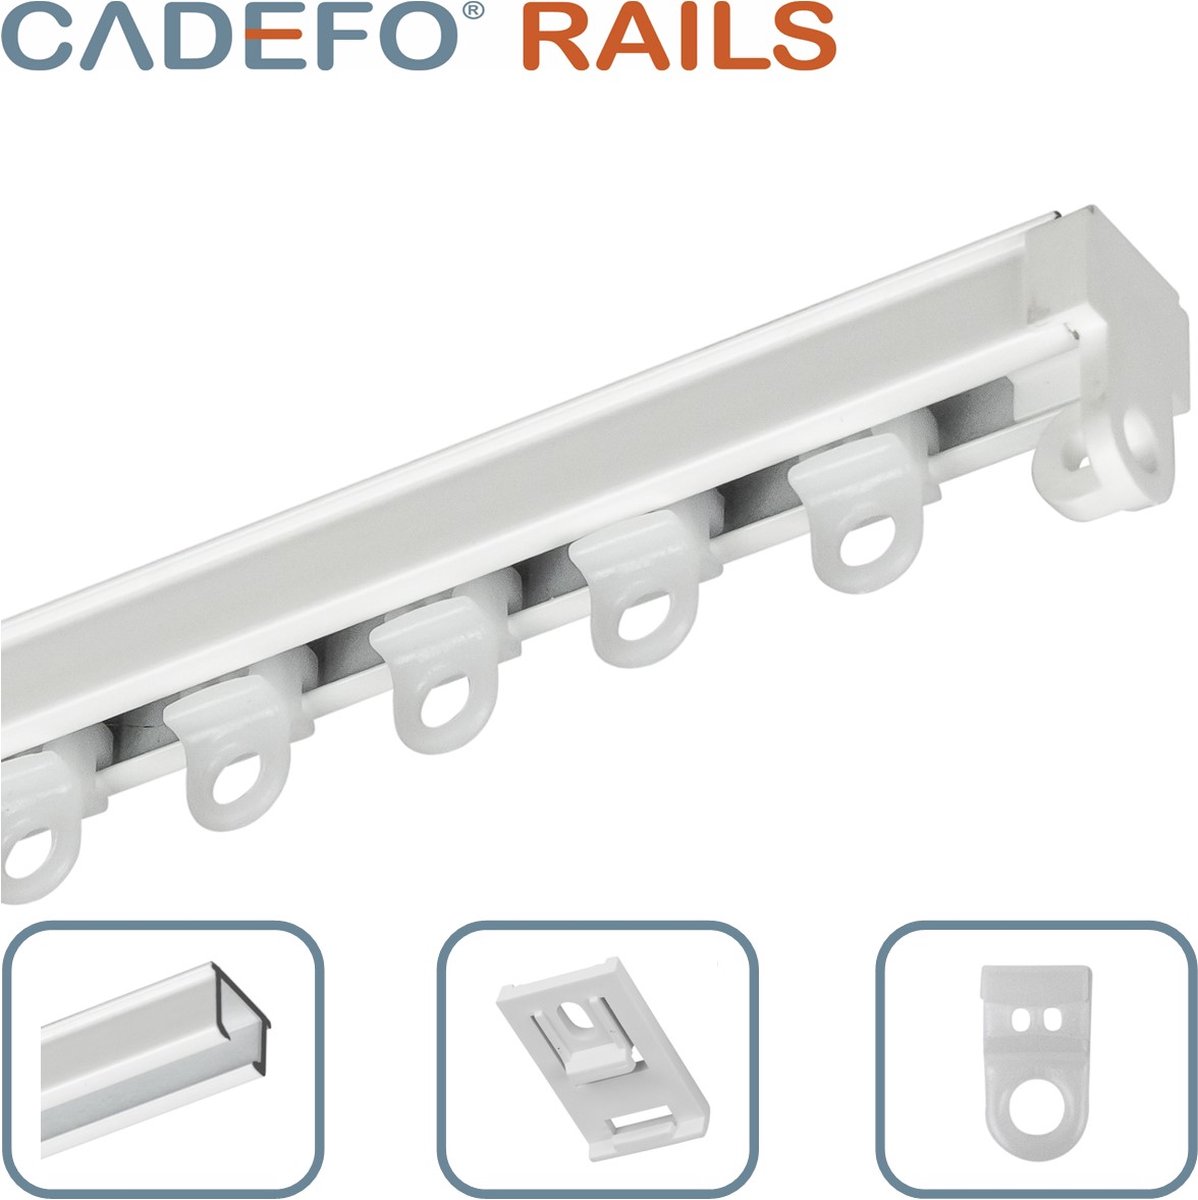 CADEFO RAILS (301 - 350 cm) Gordijnrails - Compleet op maat! - UIT 1 STUK - Leverbaar tot 6 meter - Plafondbevestiging - Lengte 304 cm